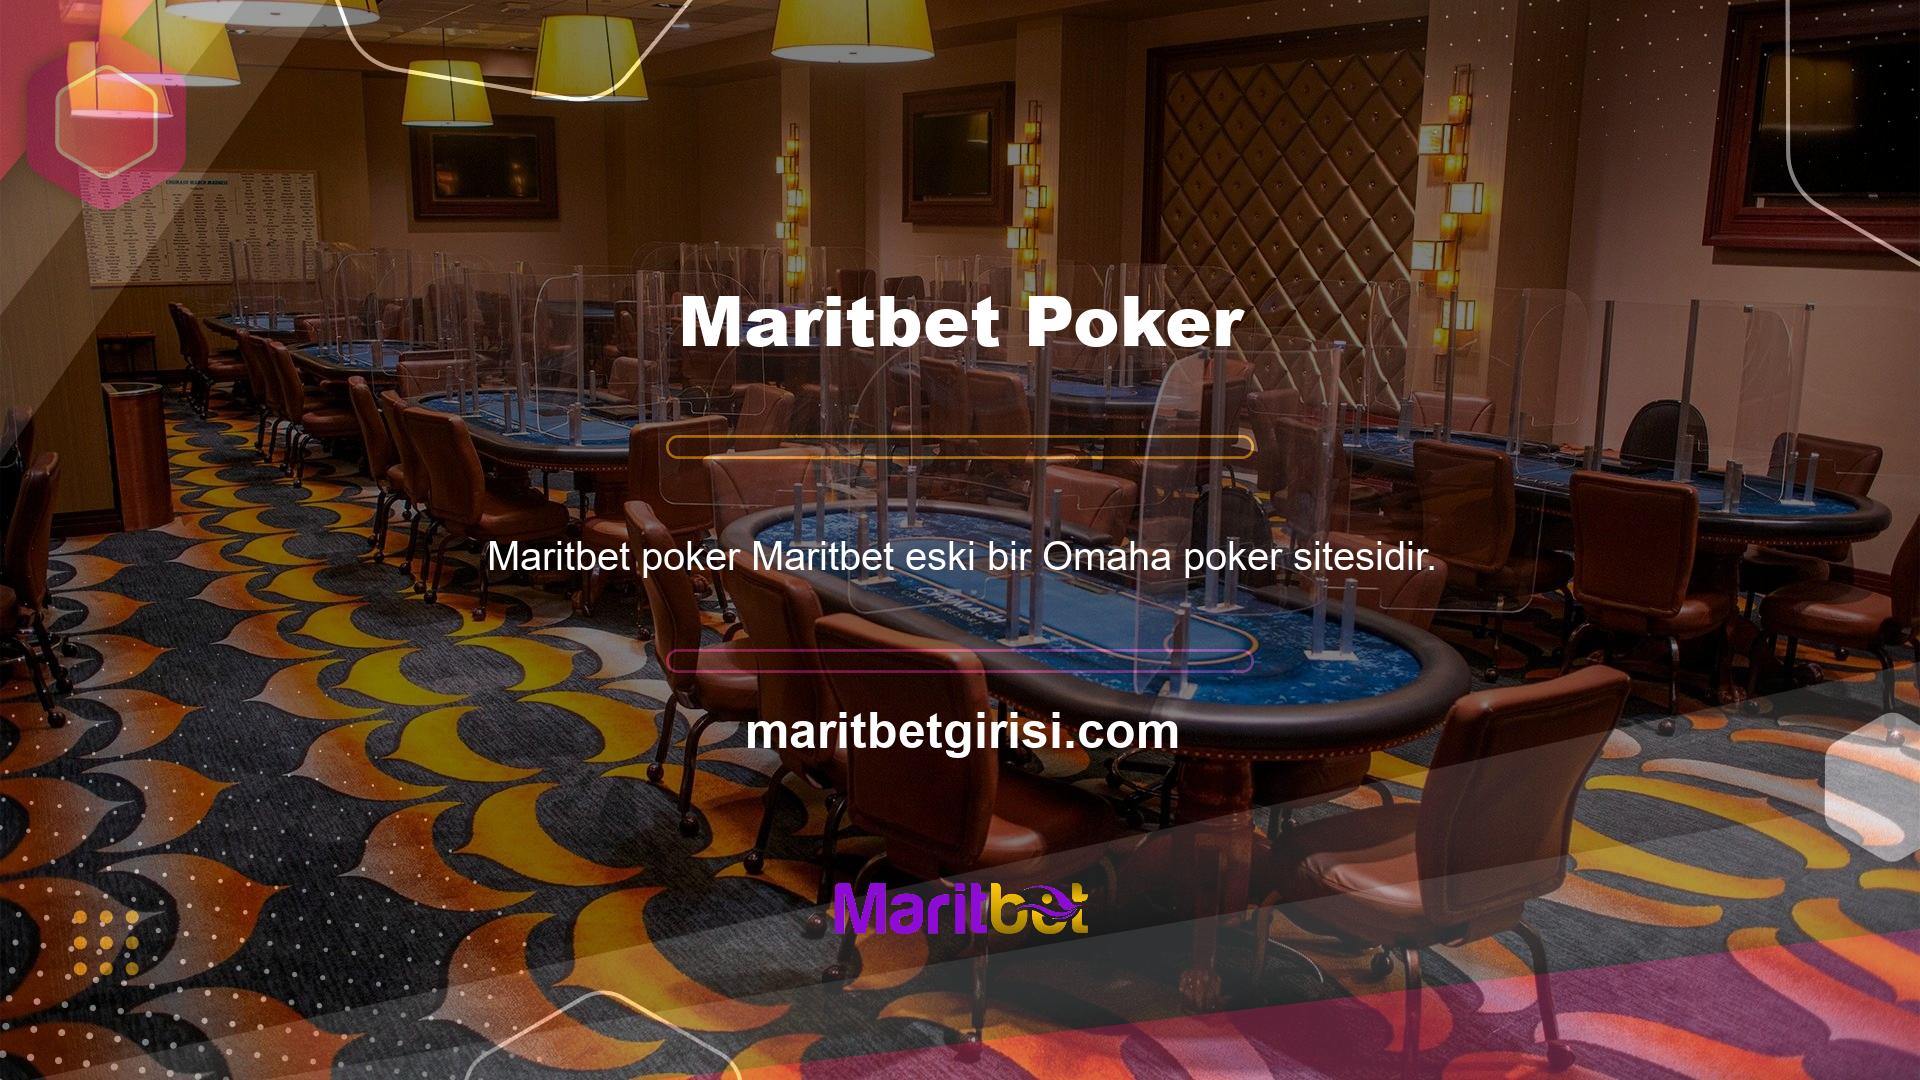 Maritbet Poker Odası'nda her türlü Türk pokerini ve isteğinize göre gerçek bir casinoyu bulabilirsiniz